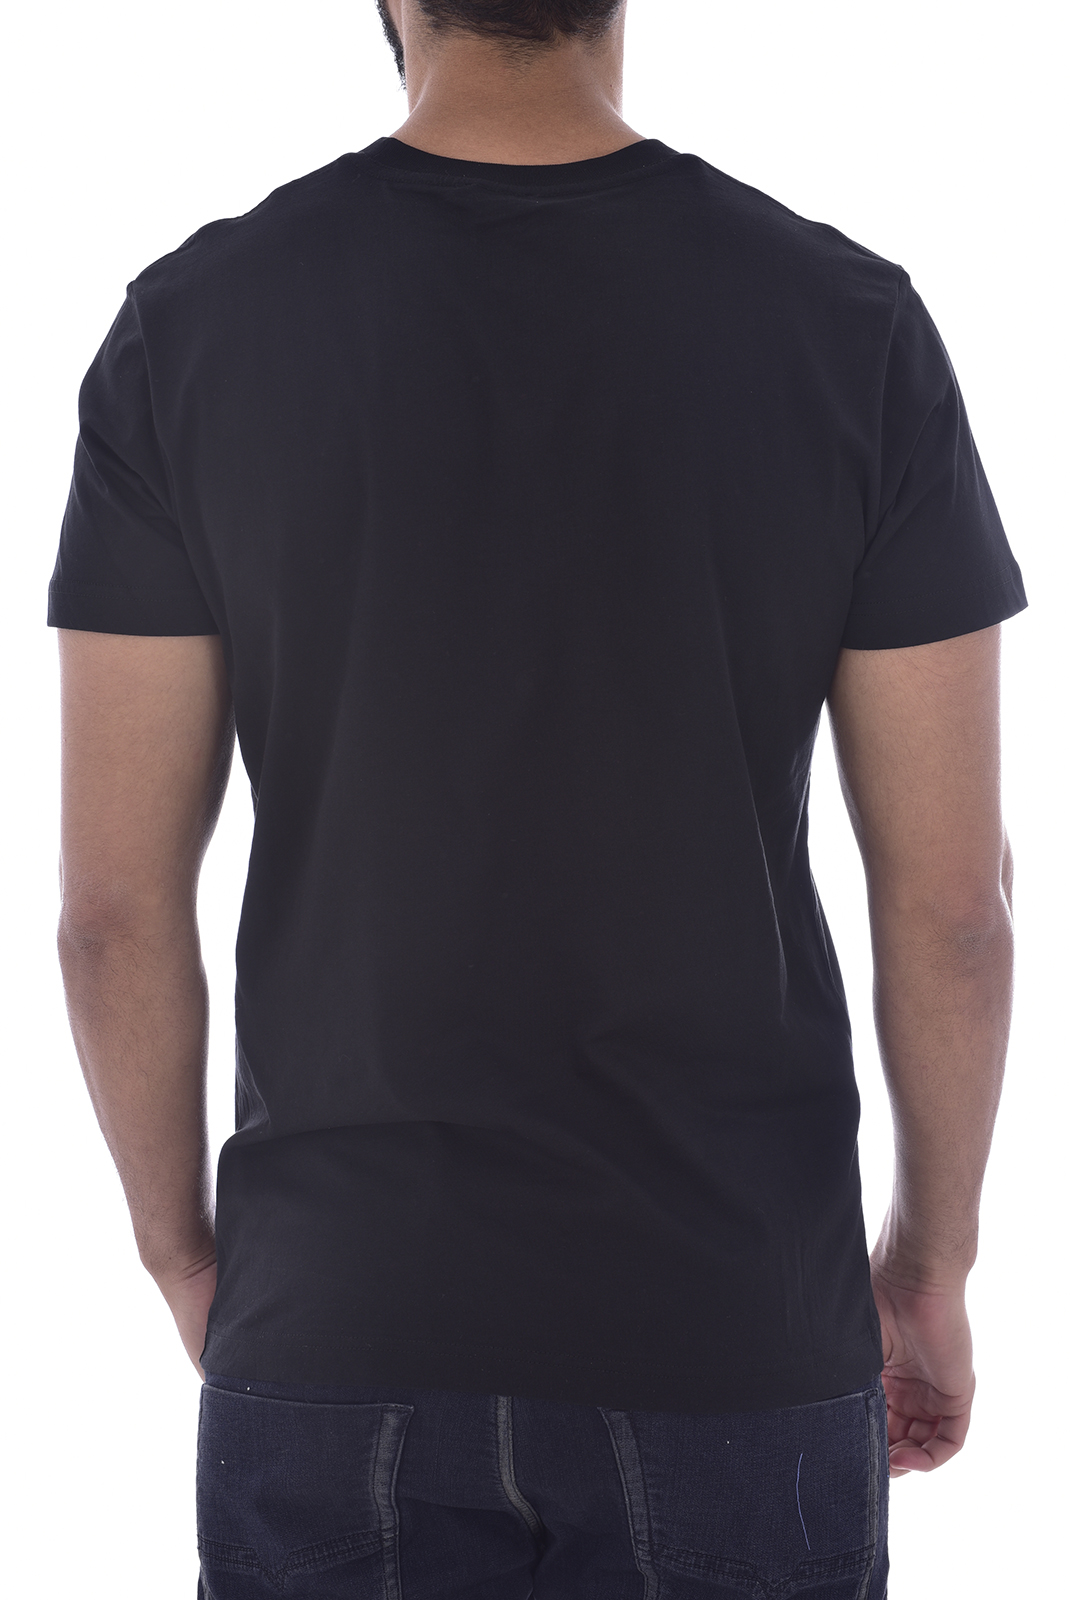 T-shirt noir homme à manches courtes Diesel - T-diego